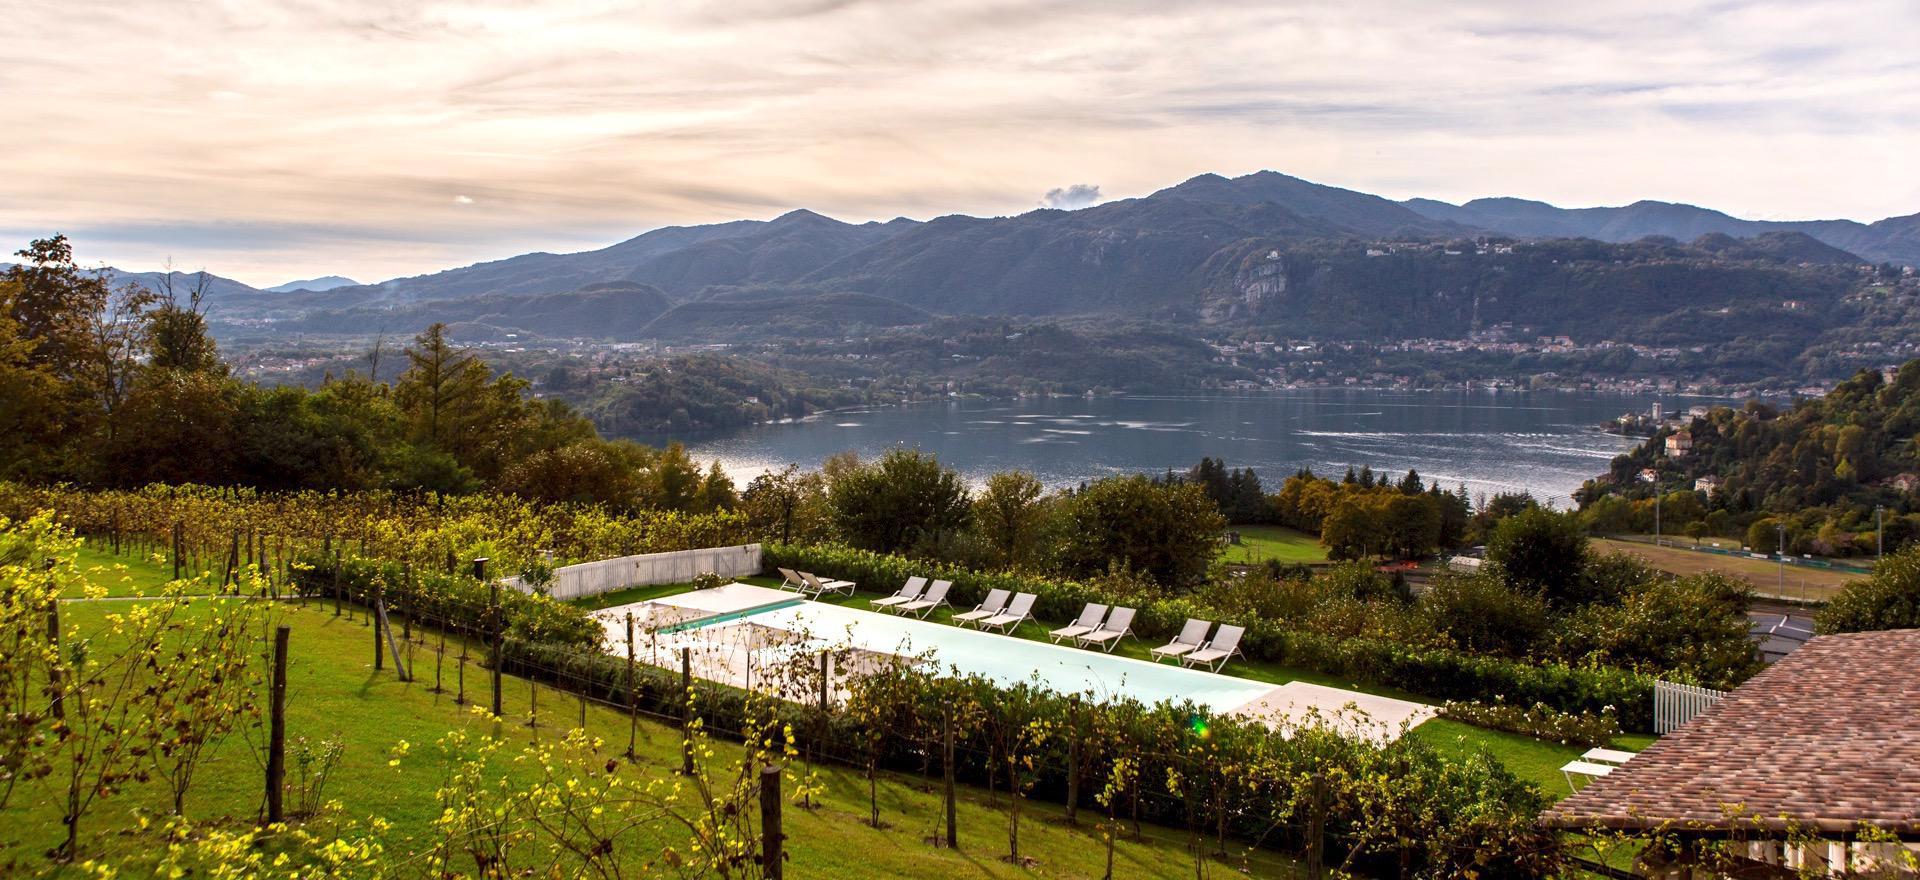 Agriturismo Lago di Como e lago di Garda Agriturismo lago Maggiore con bellissima vista